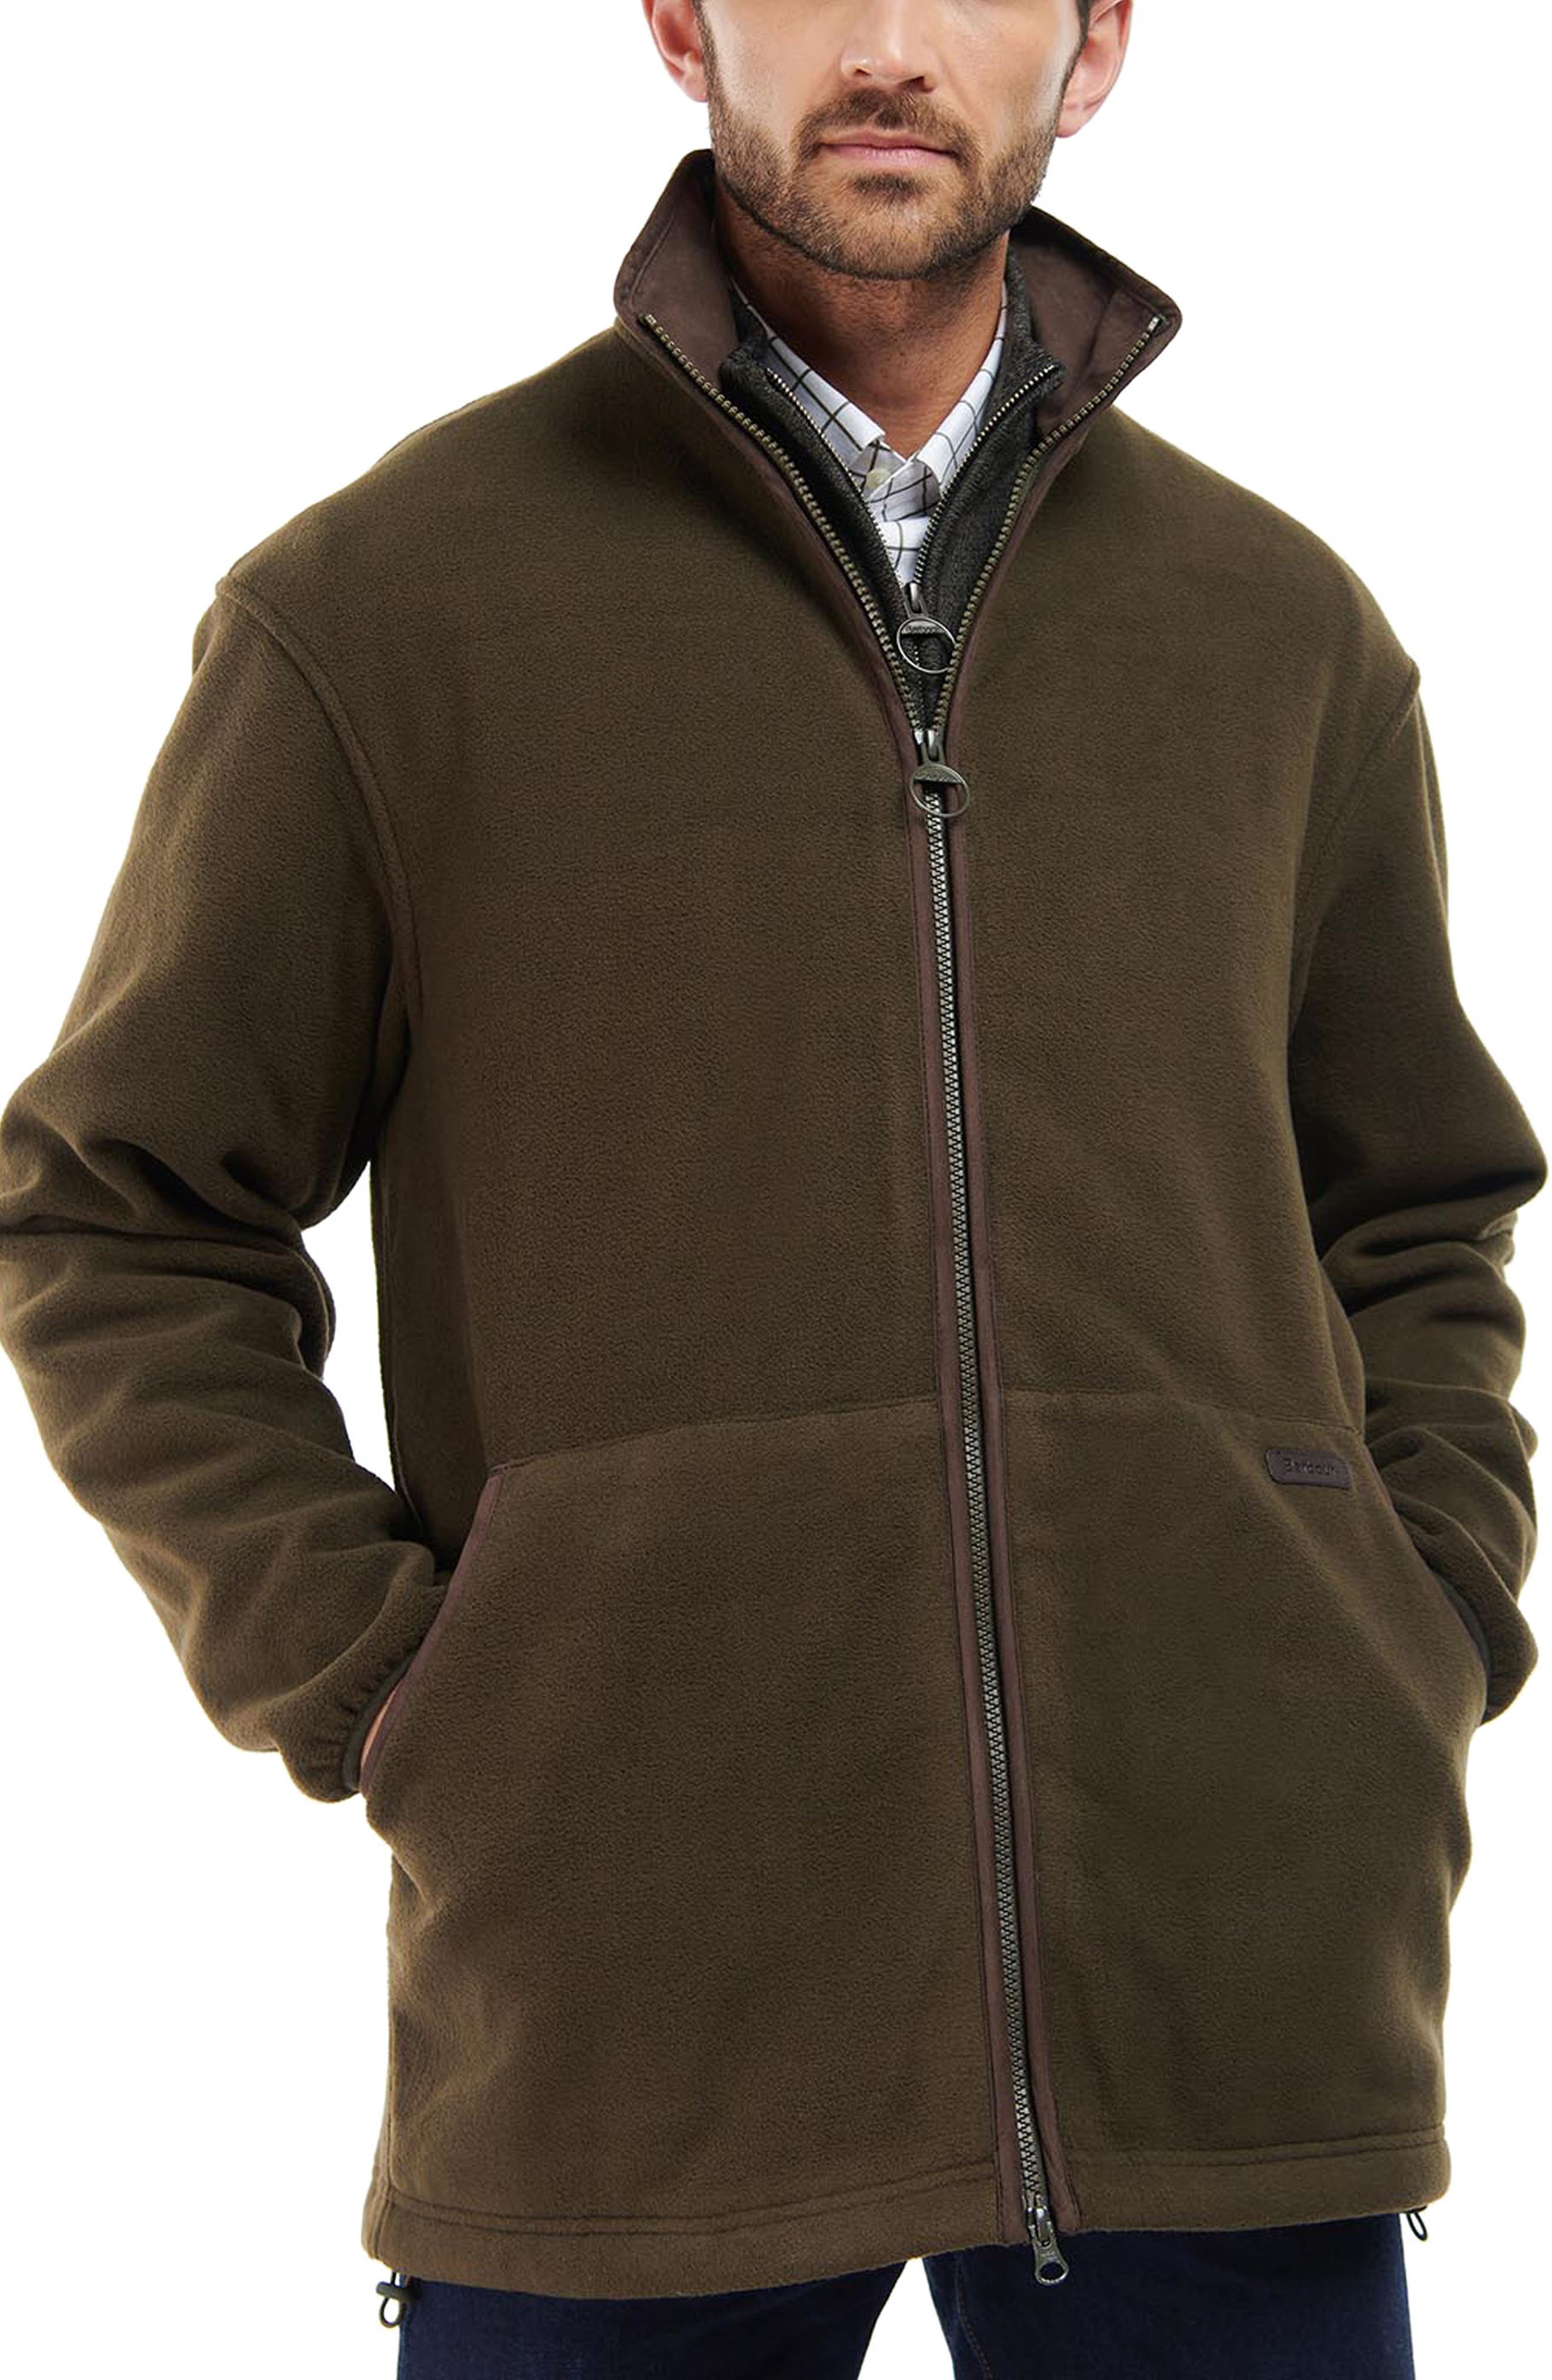 Mens Muzzer Fuzzar Camo Textured Fleece Zip-Up Jacket in Bark Brown at Nordstrom Nordstrom Men Clothing Jackets Fleece Jackets 